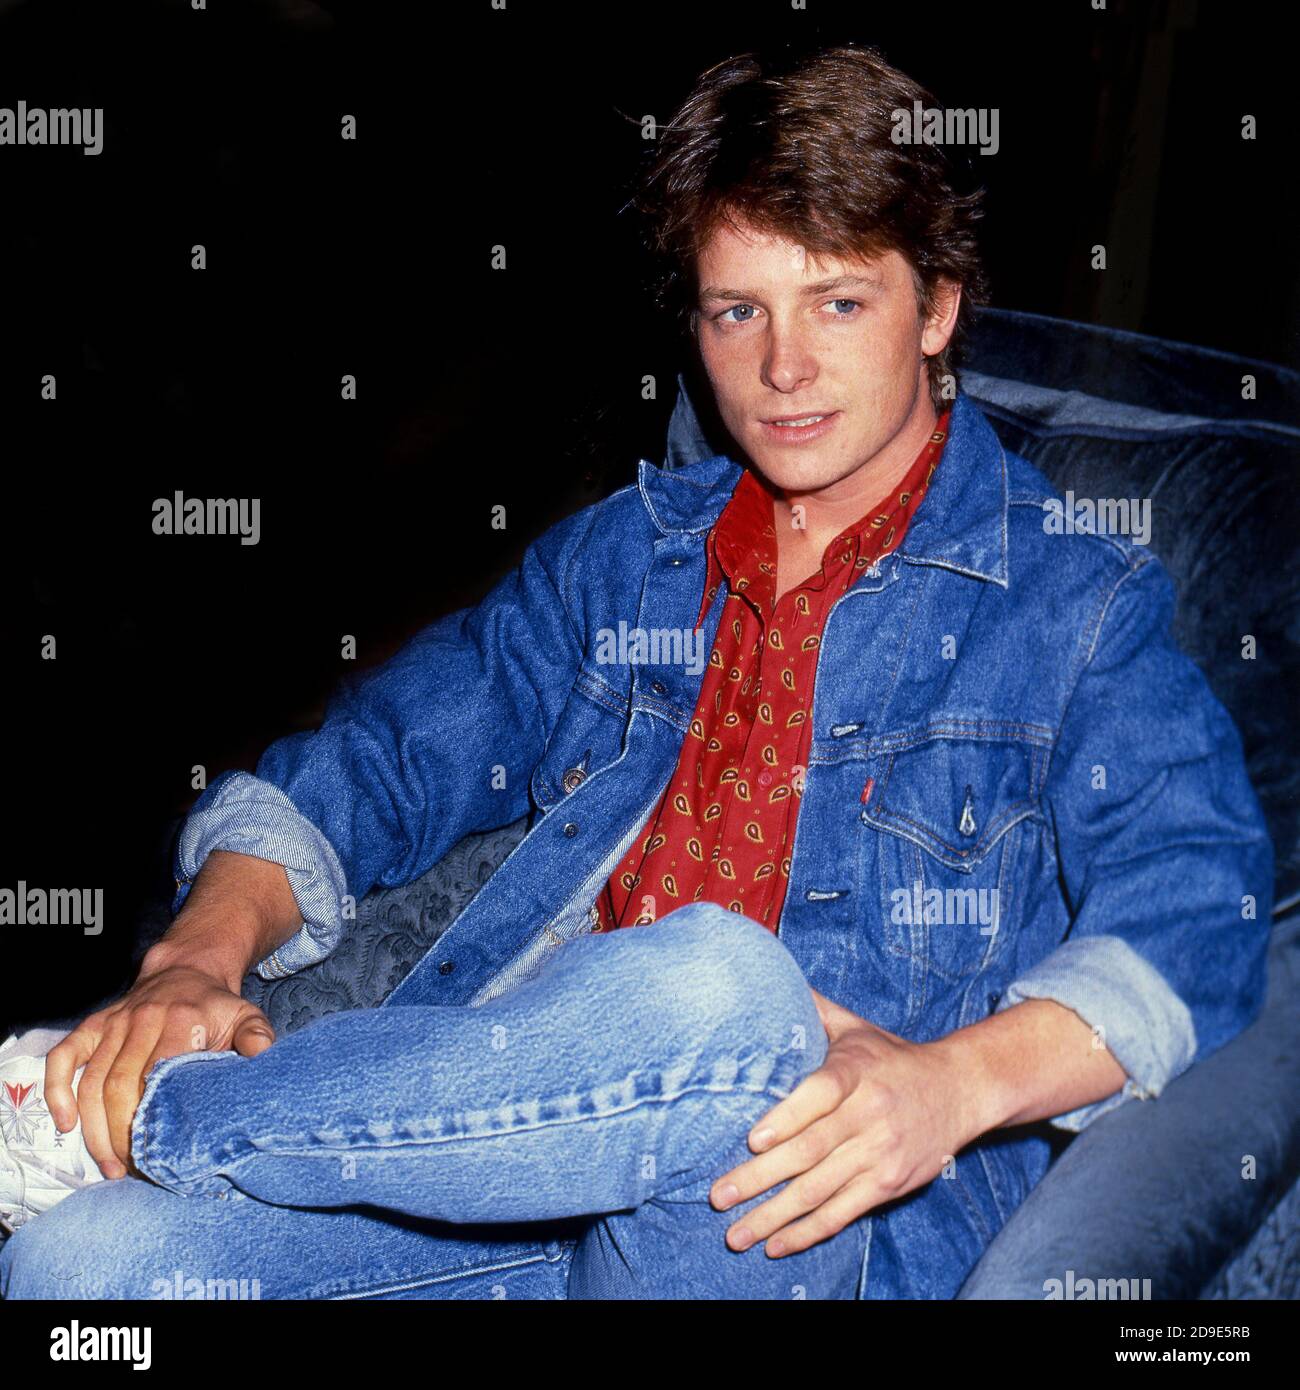 Der kanadisch-amerikanische Schauspieler Michael J Fox, der für diese Rolle als berühmt ist Marty McFly in der Zurück in die Zukunft Trilogie und Für sein Leiden an Parkinson Stockfoto